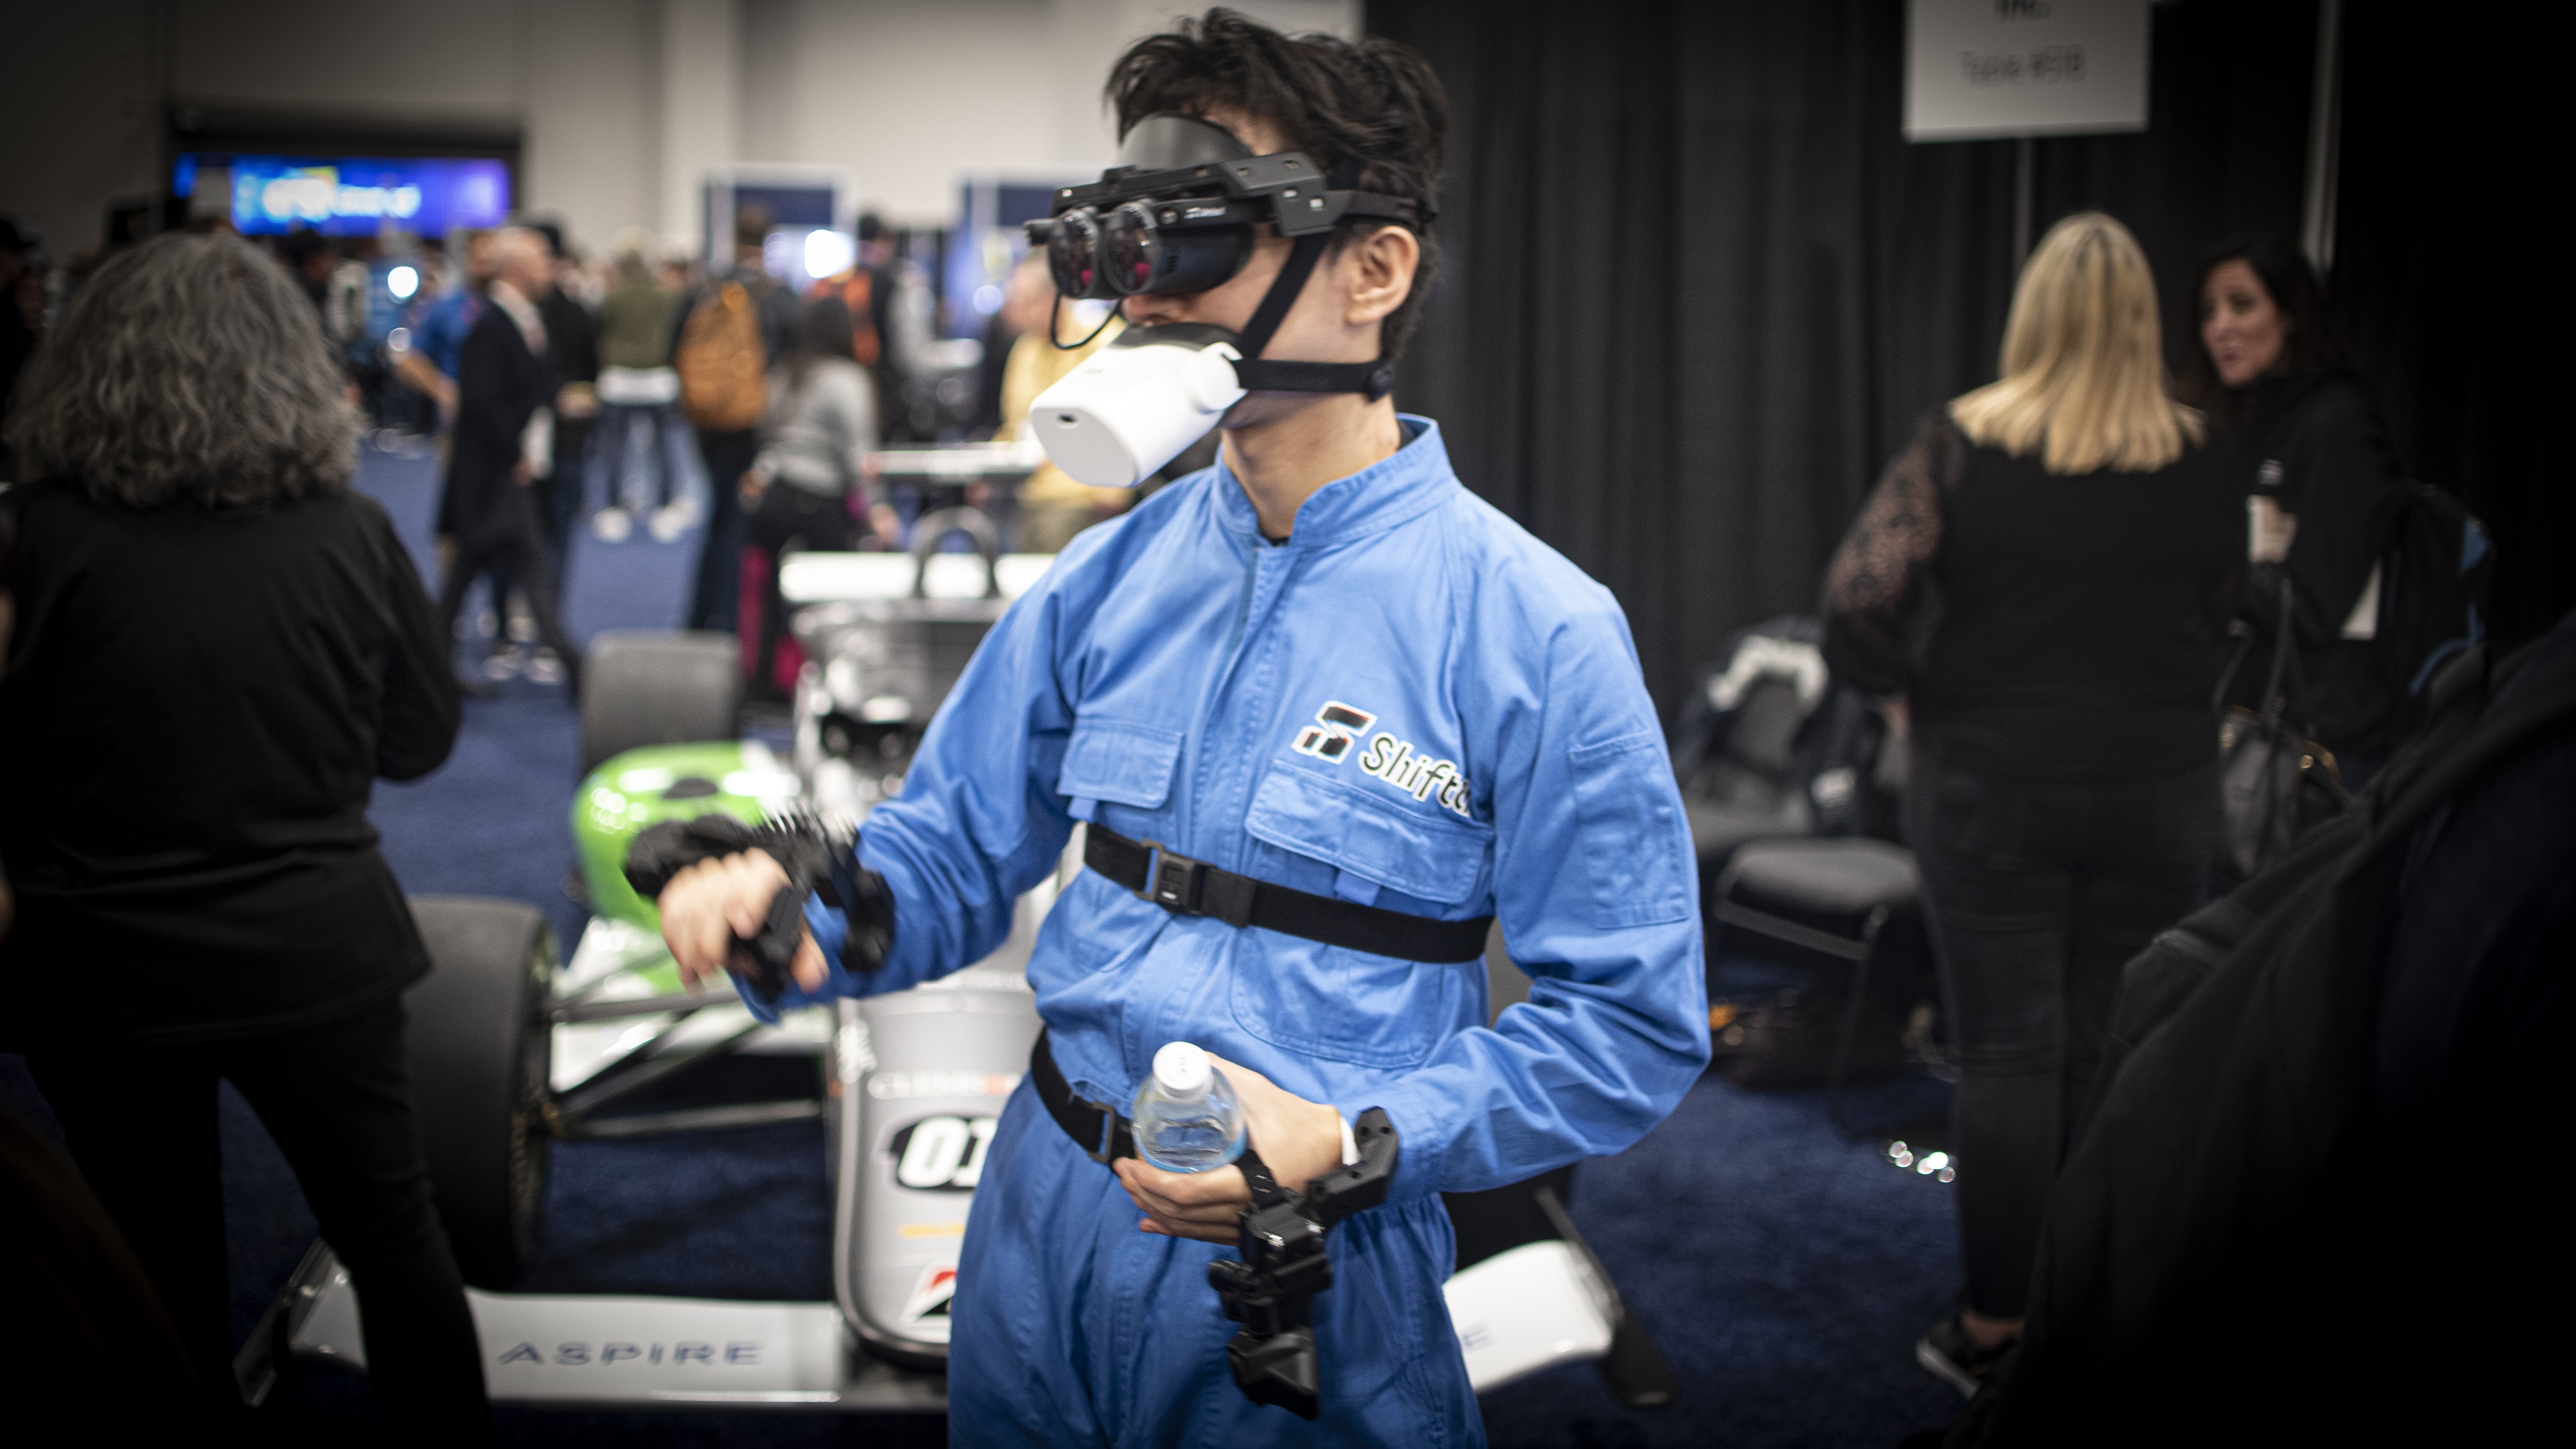 Microphone de confidentialité Shiftall Mutalk sur un homme portant un équipement VR